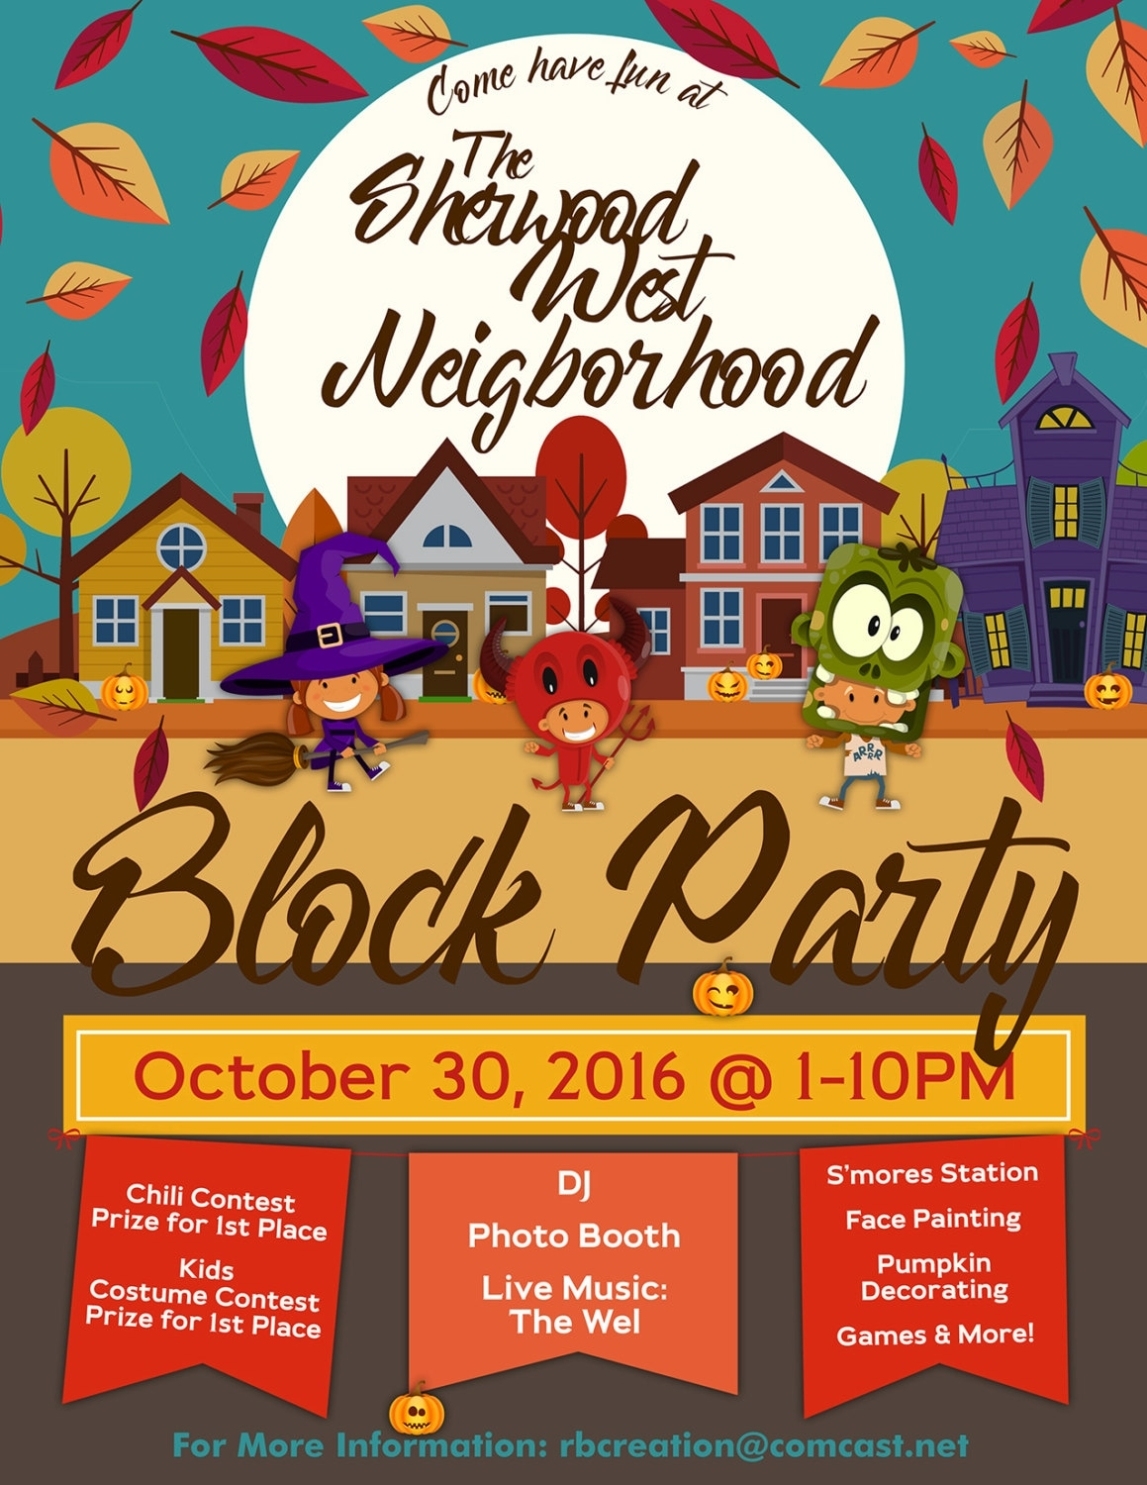 Block Party Flyer Fall Festival Fall Flyer Autumn Flyer | Etsy regarding Block Party Template Flyer